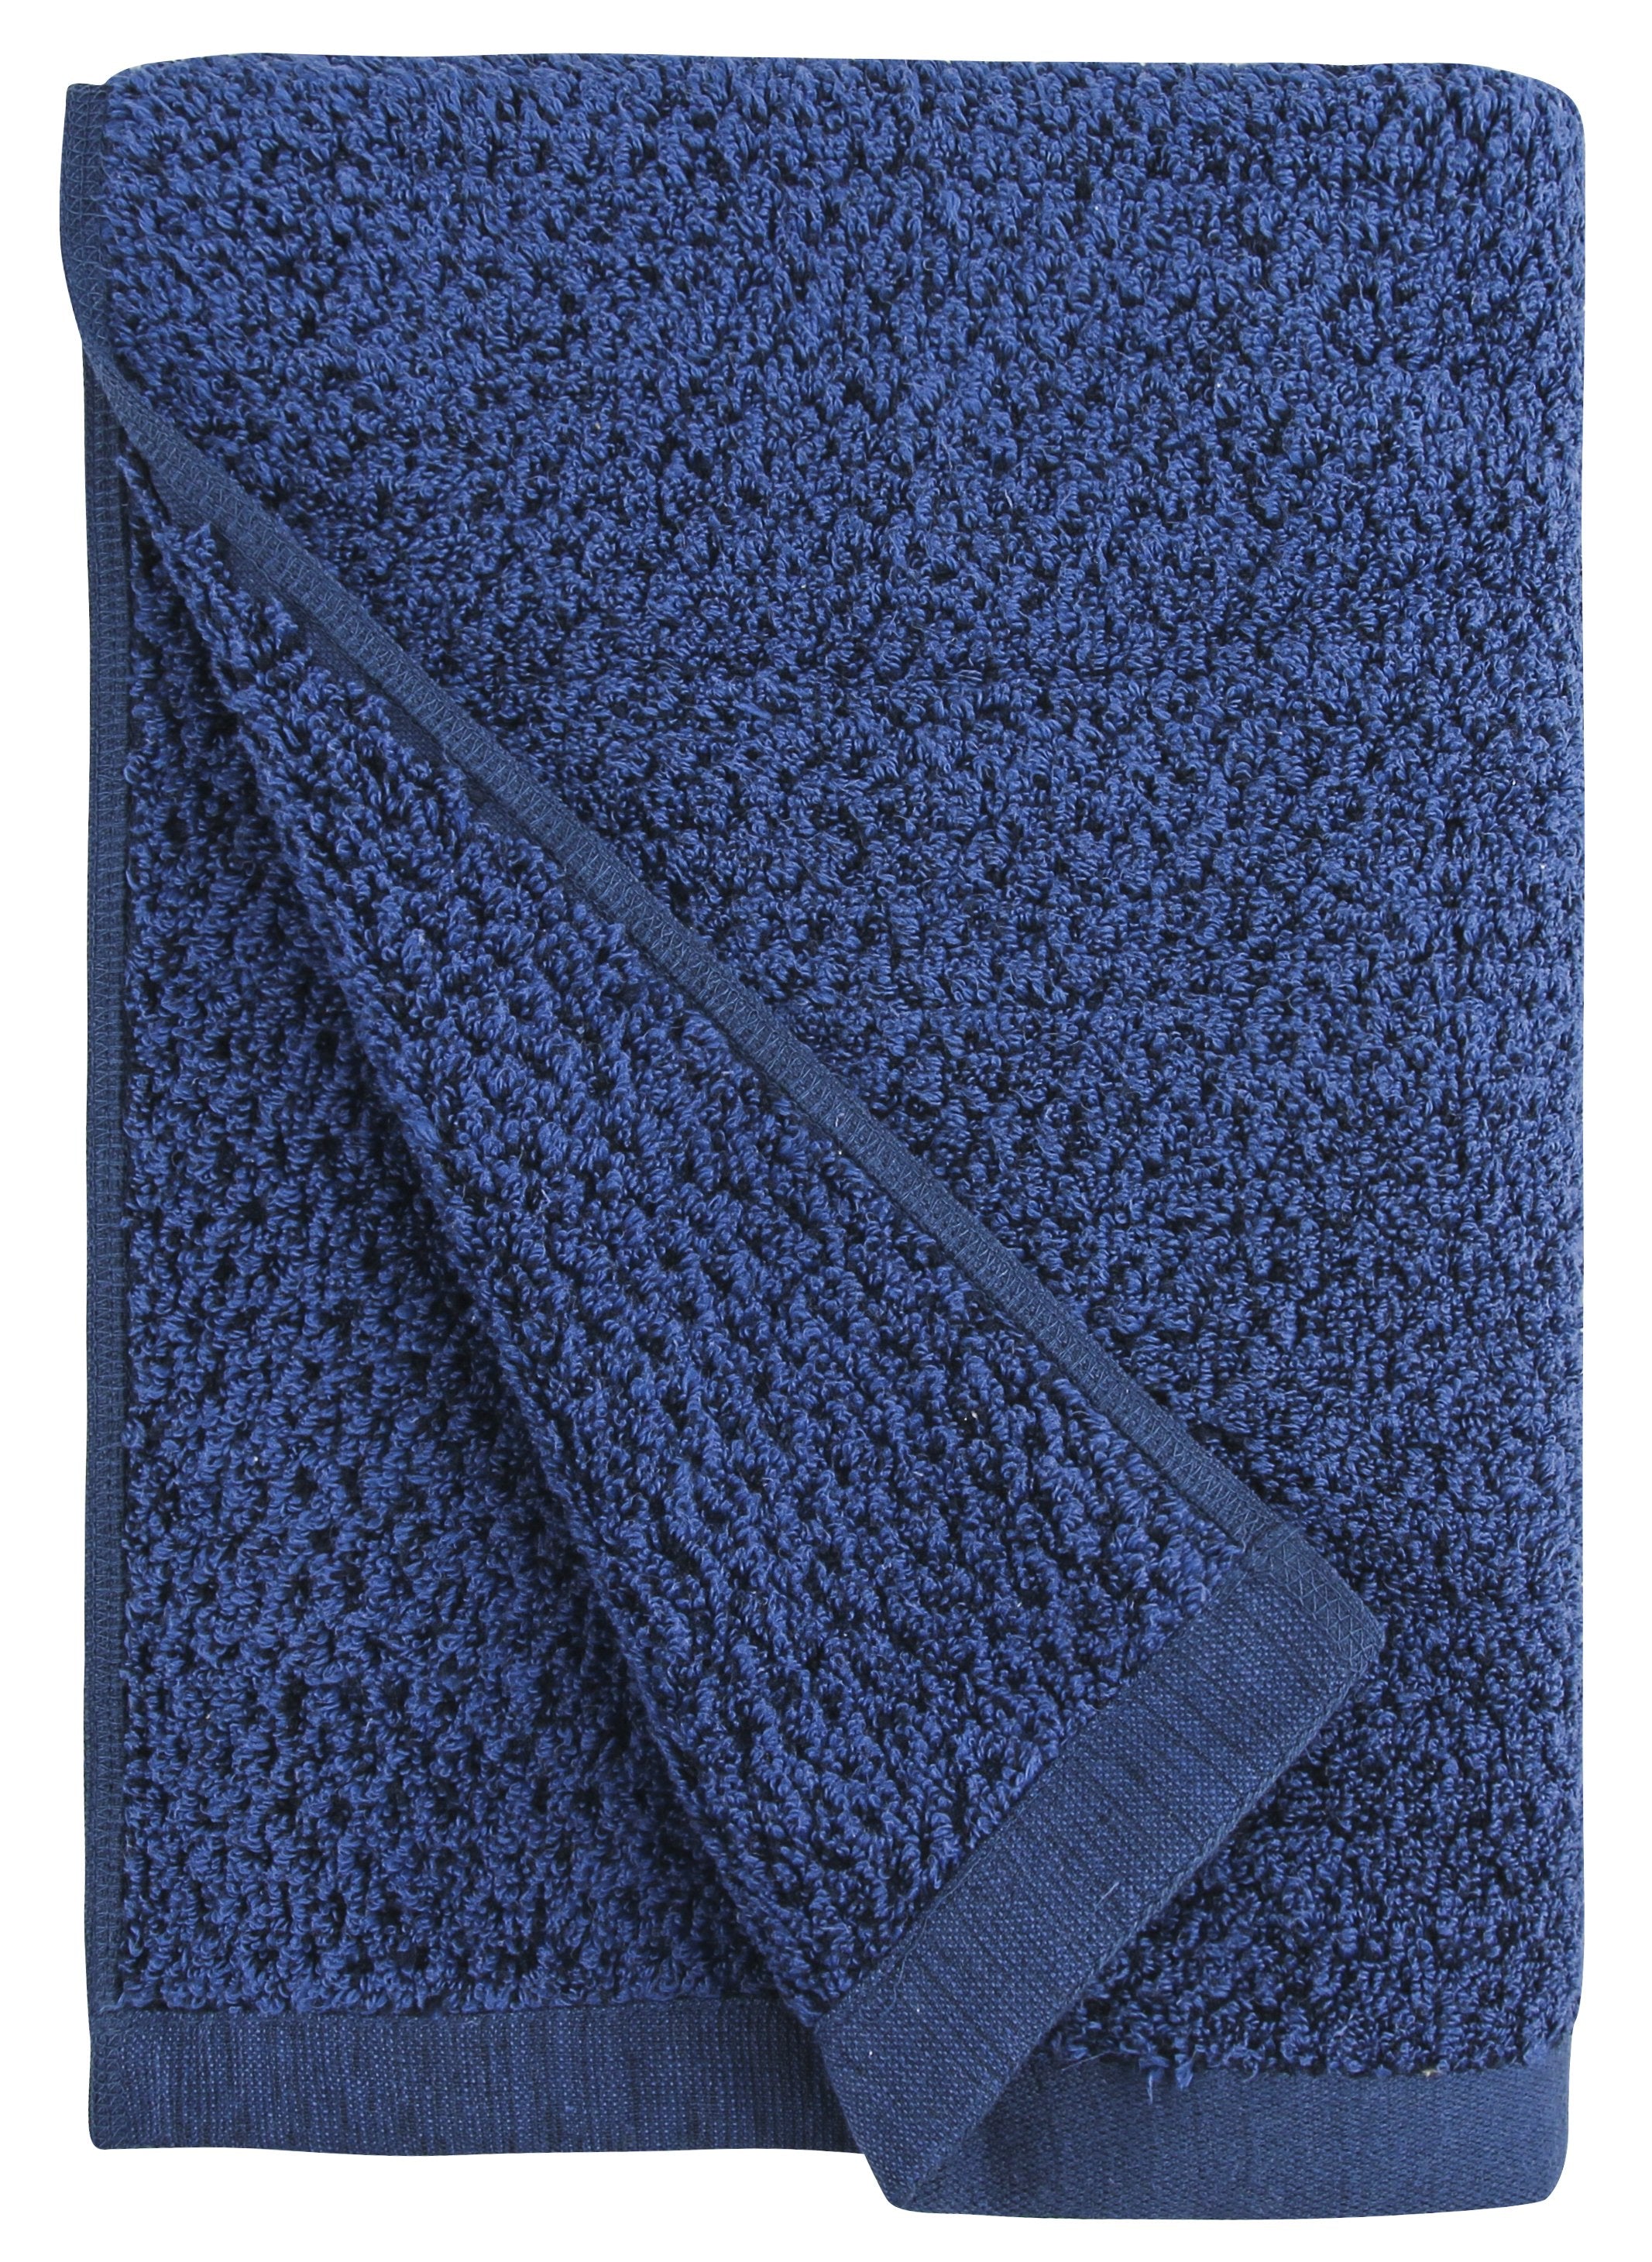 Piece Cotton Bath Towel Set, Navy Blue Dish towel Hand towels for